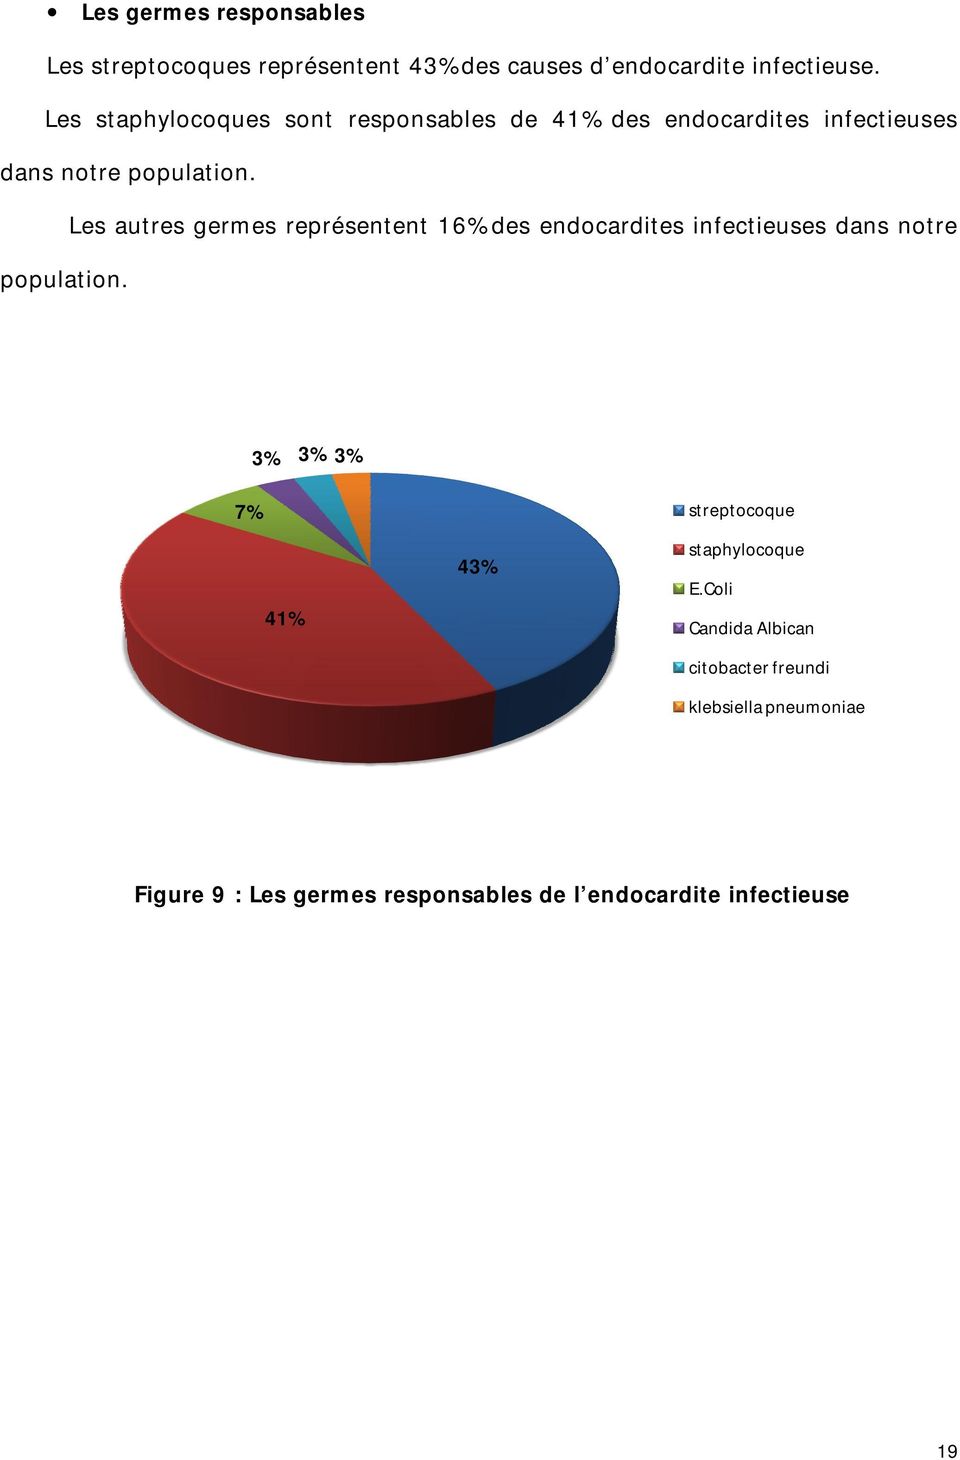 Les autres germes représentent 16% des endocardites infectieuses dans notre population.